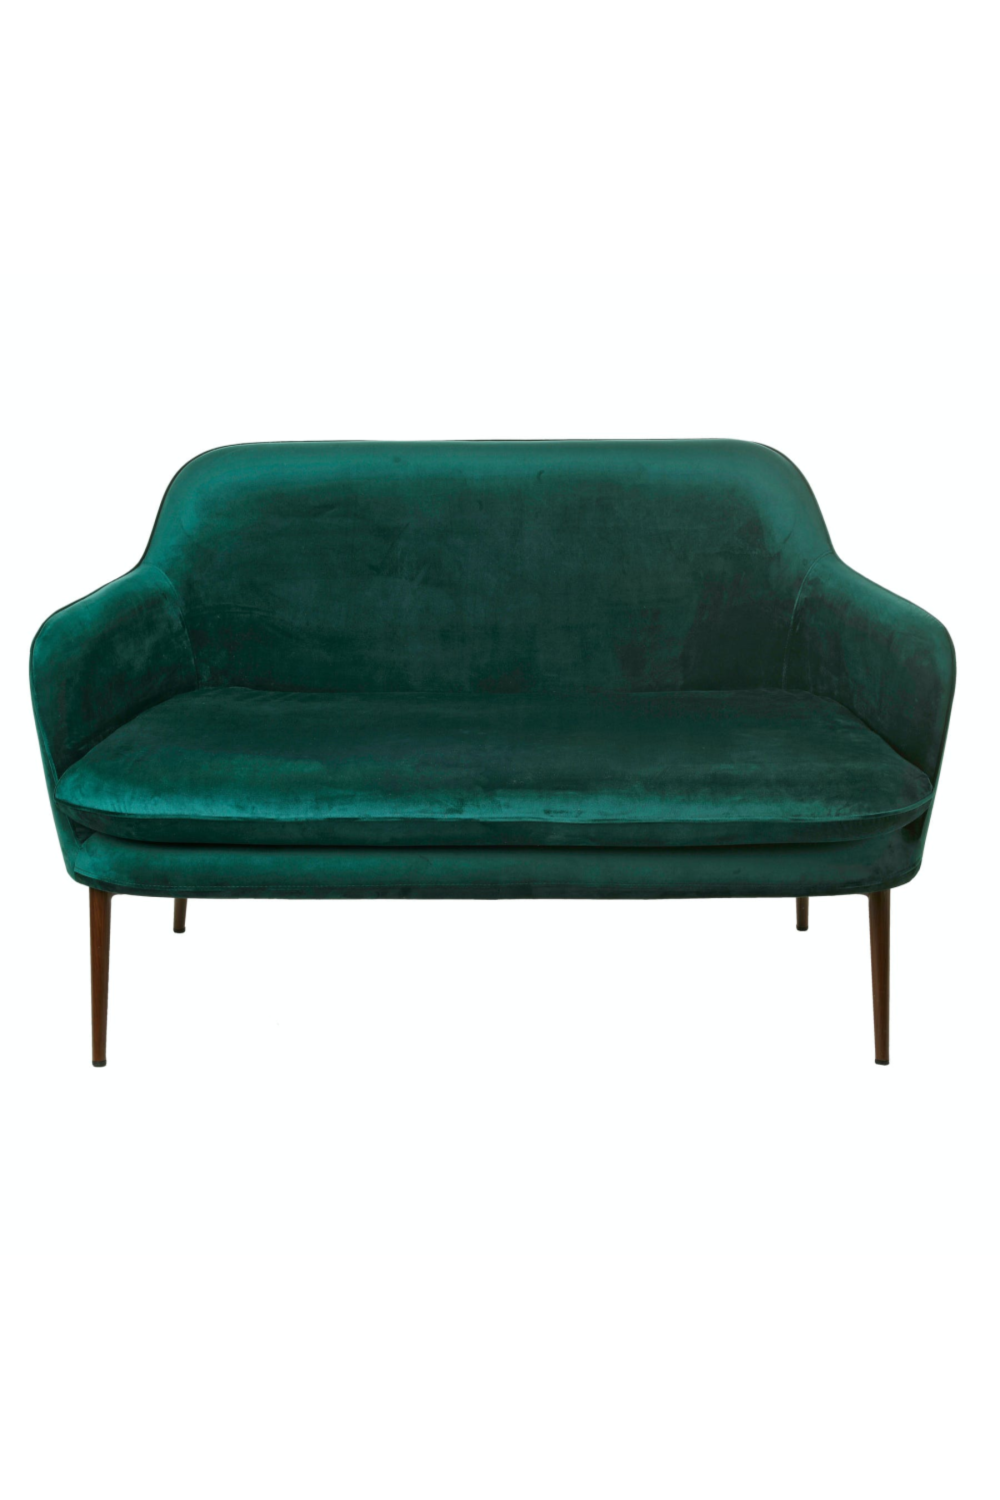 Dwang Onveilig Ontwapening Green Velvet Sofa | Pols Potten | Dutch Furniture